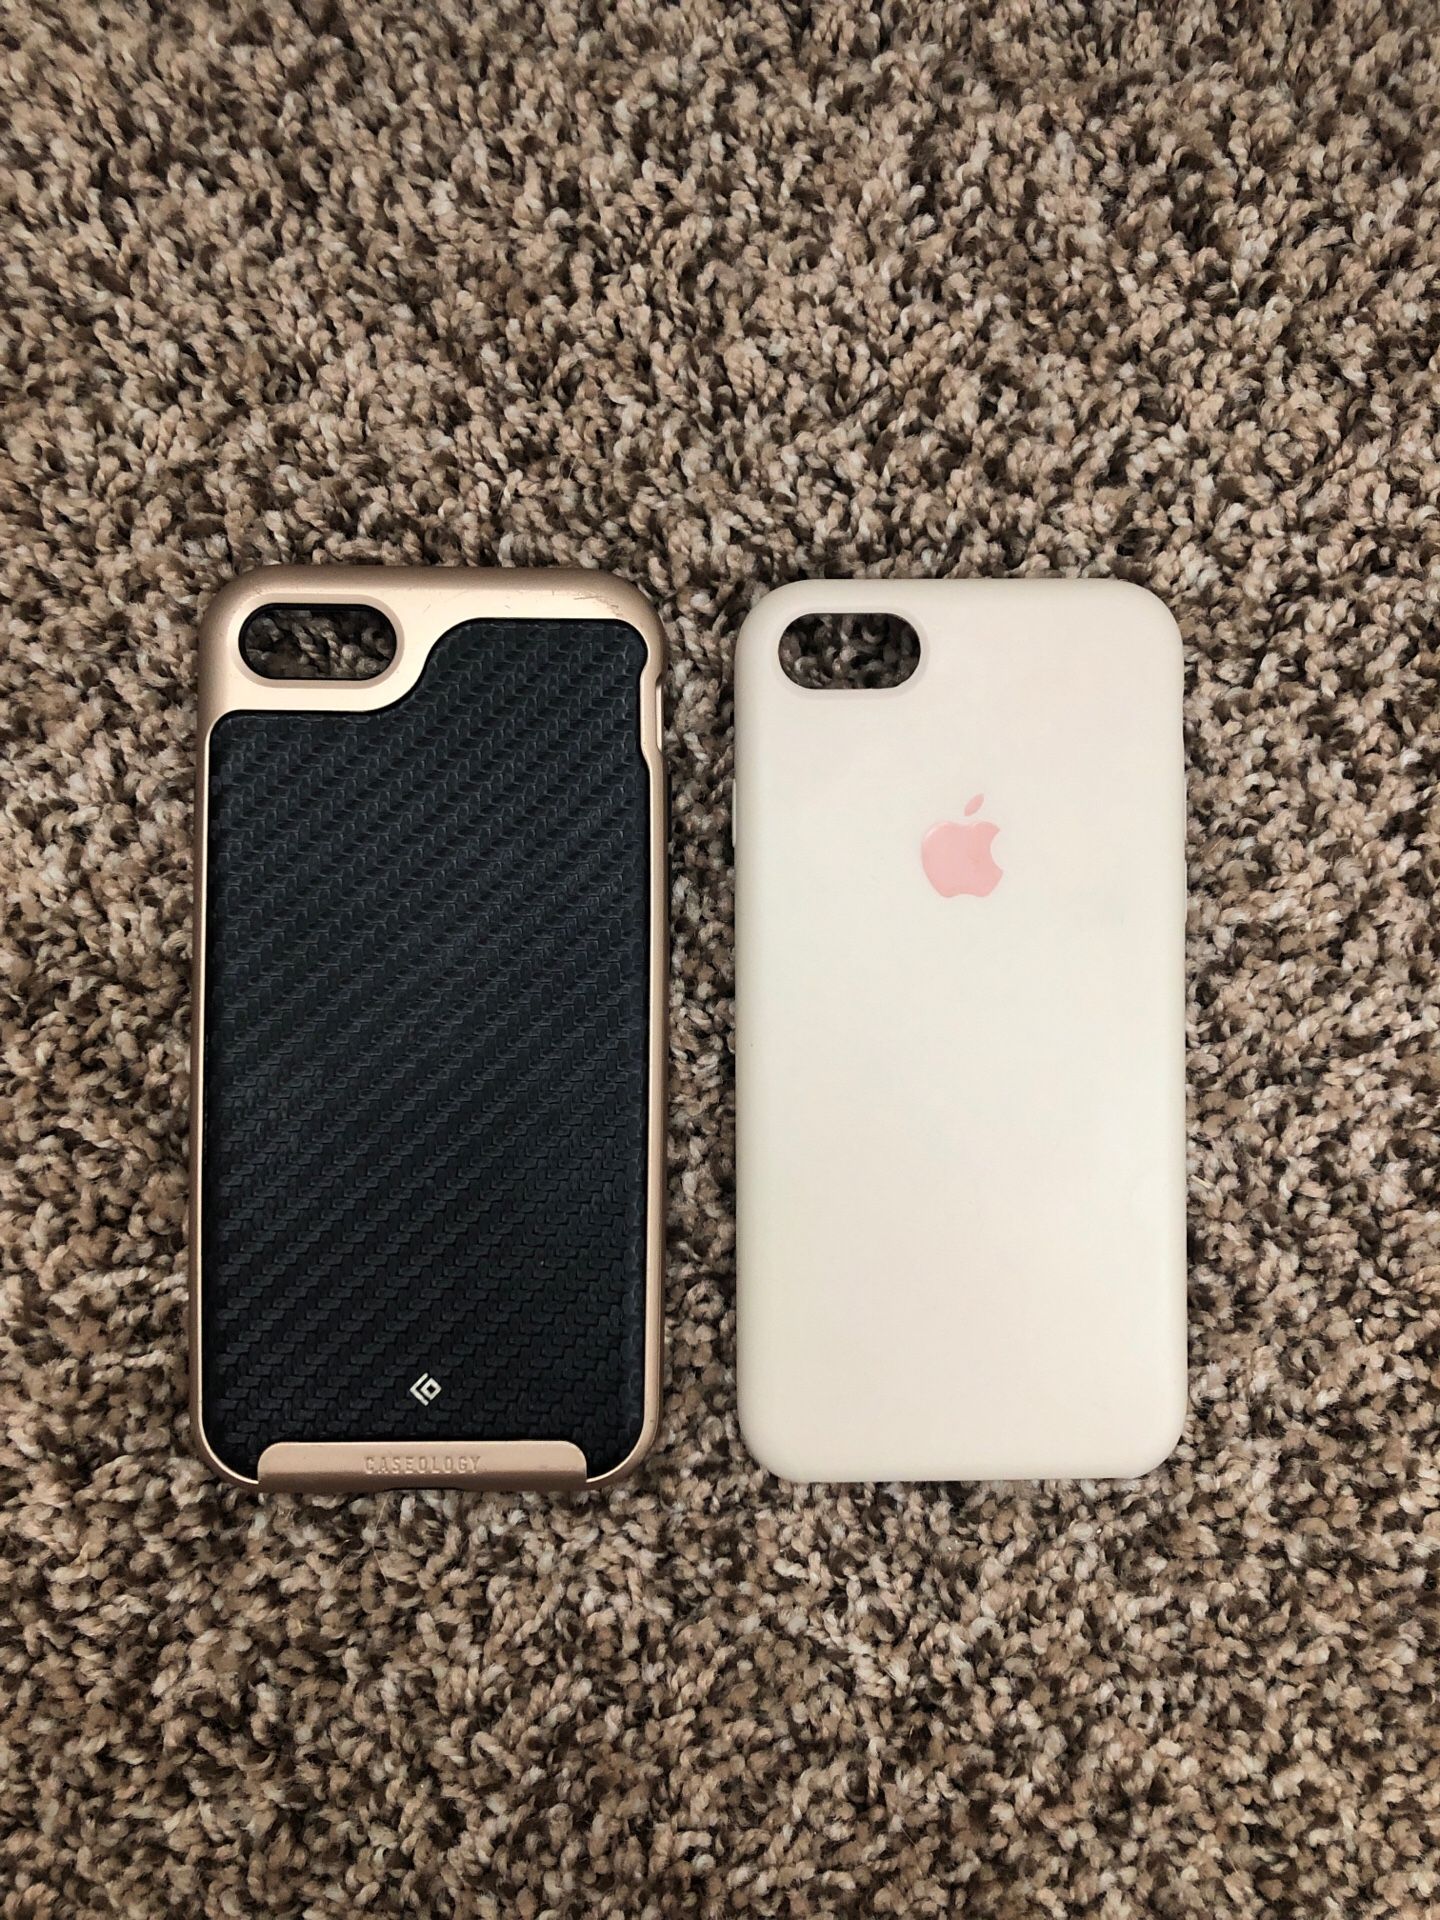 2 IPhone 8 Cases